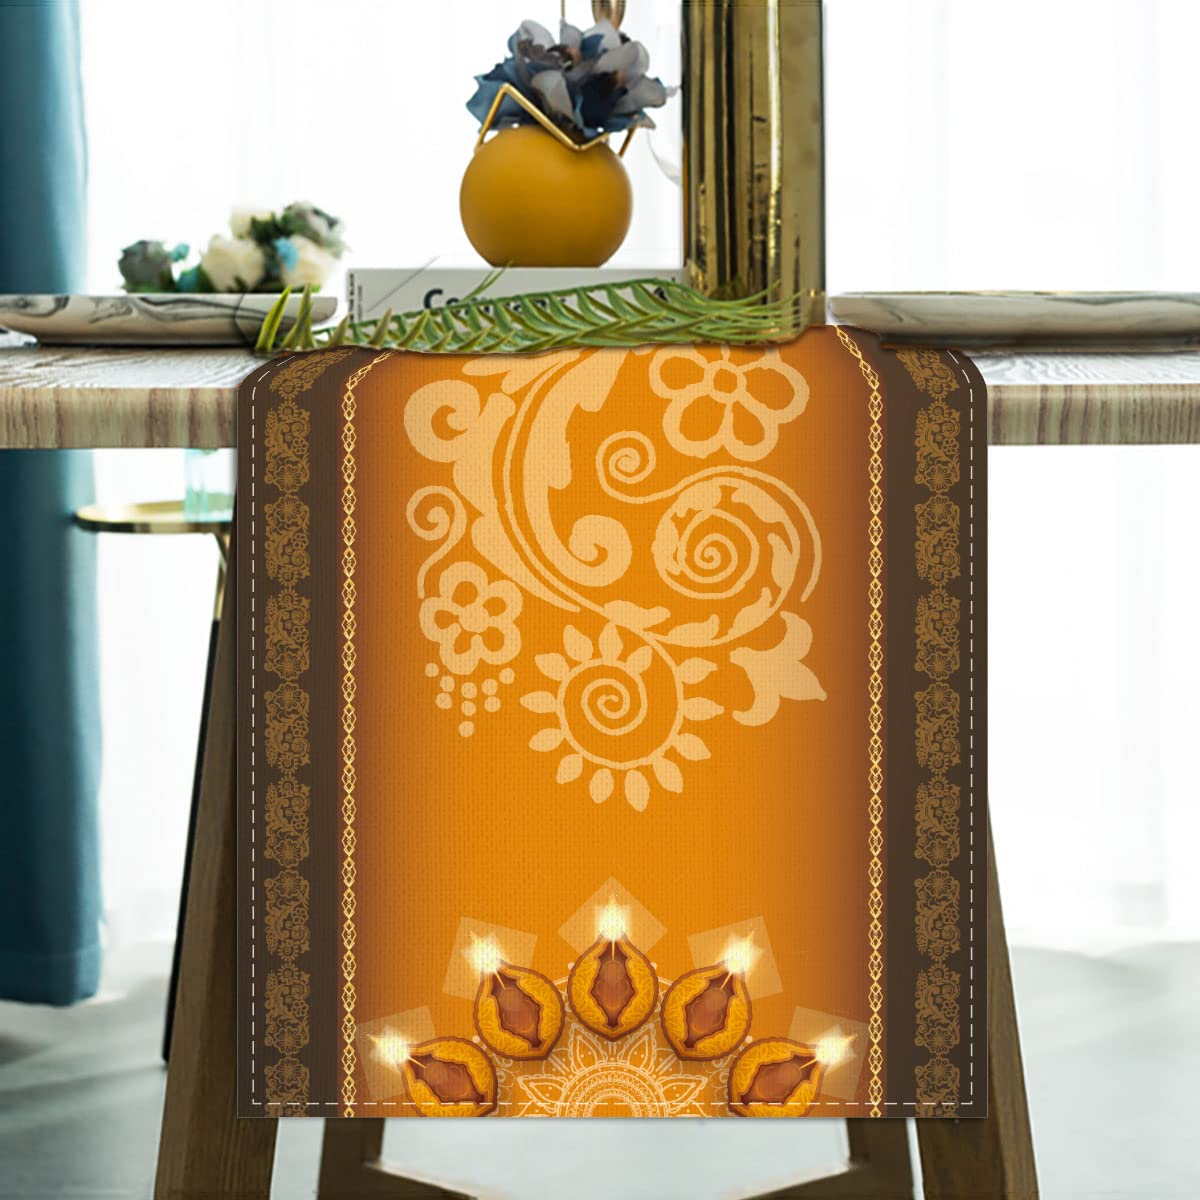 Jiudungs Linen Diwali Table Runner 72 Inches Long Diwali Table cloth Diwali Table Decorations Diwali Decor Indian Diwali Decorat